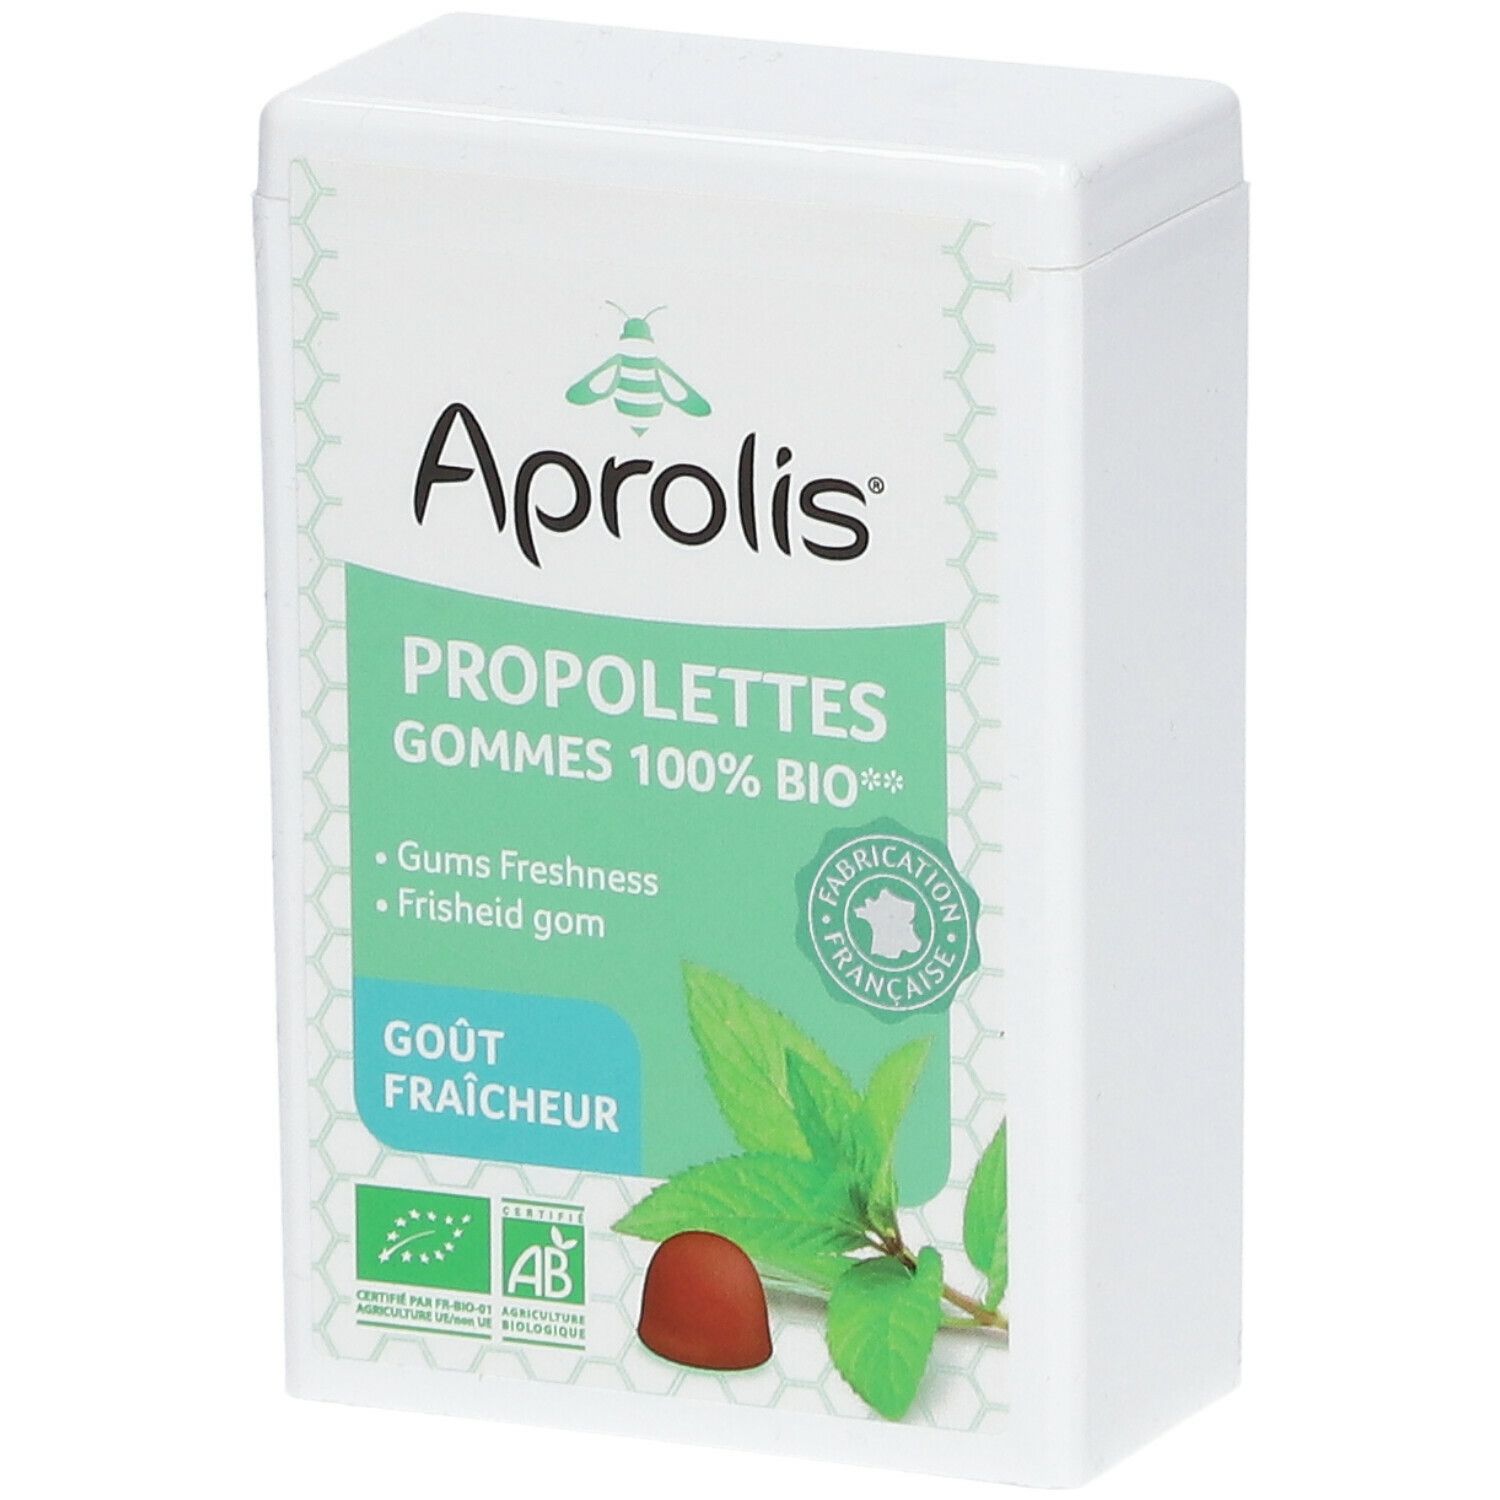 Aprolis® Propolettes 100% BIO Fraîcheur